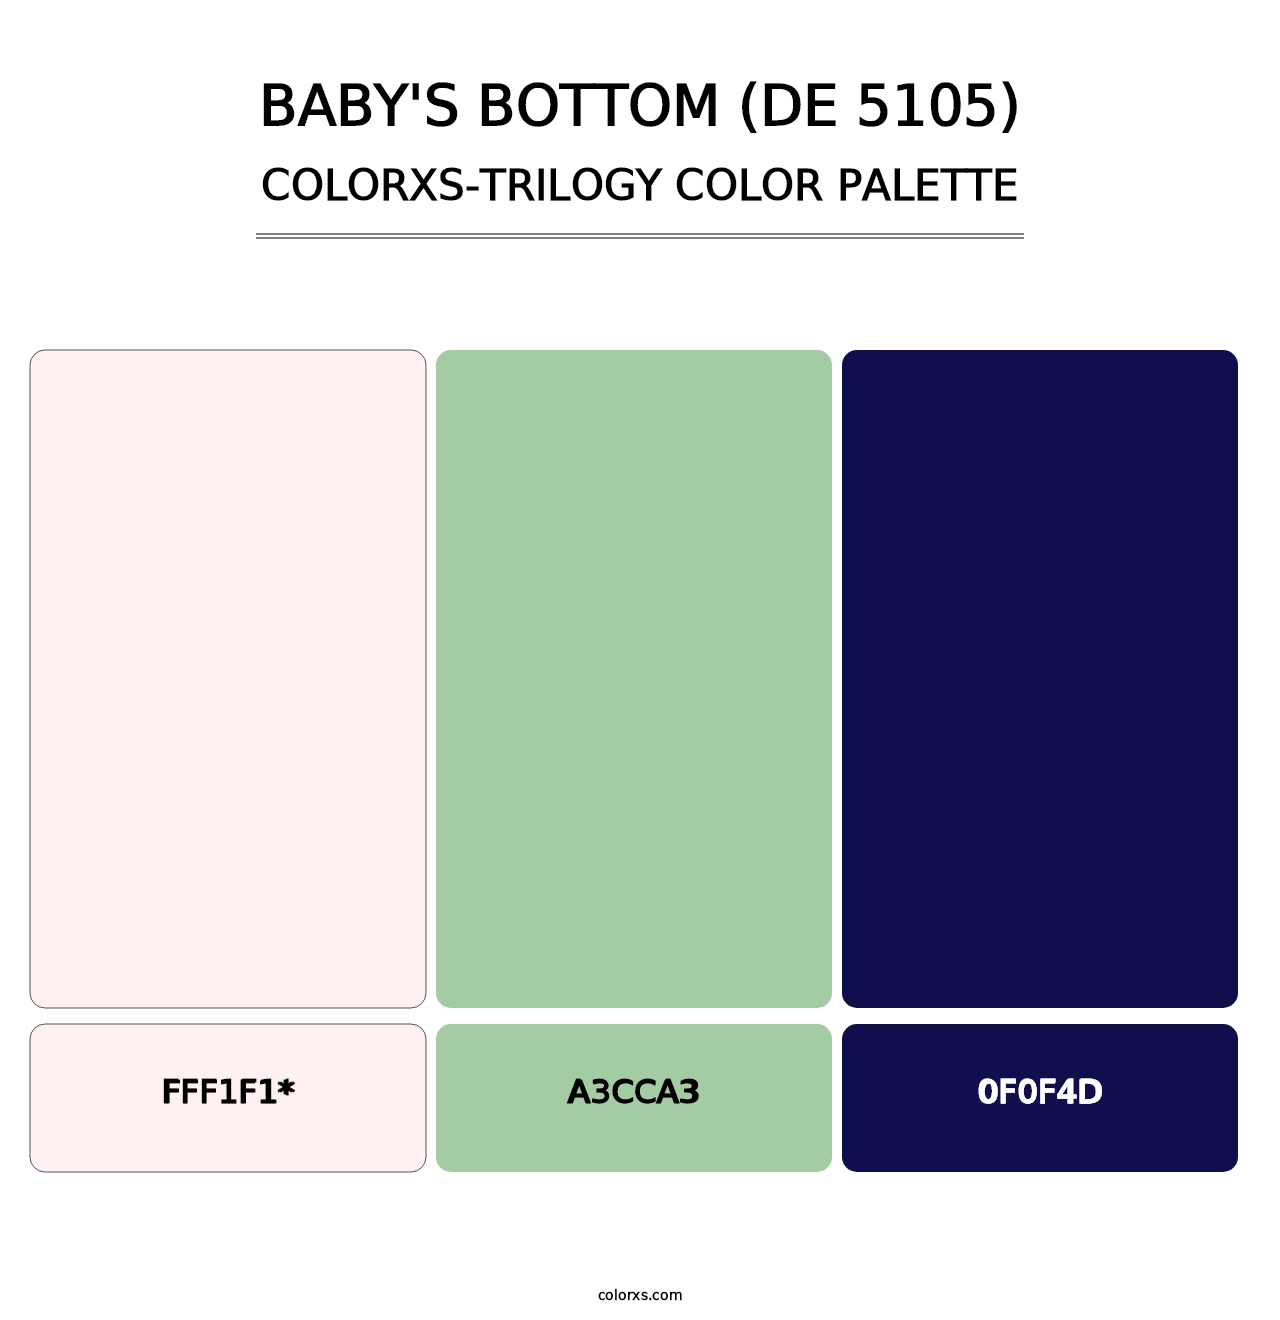 Baby's Bottom (DE 5105) - Colorxs Trilogy Palette